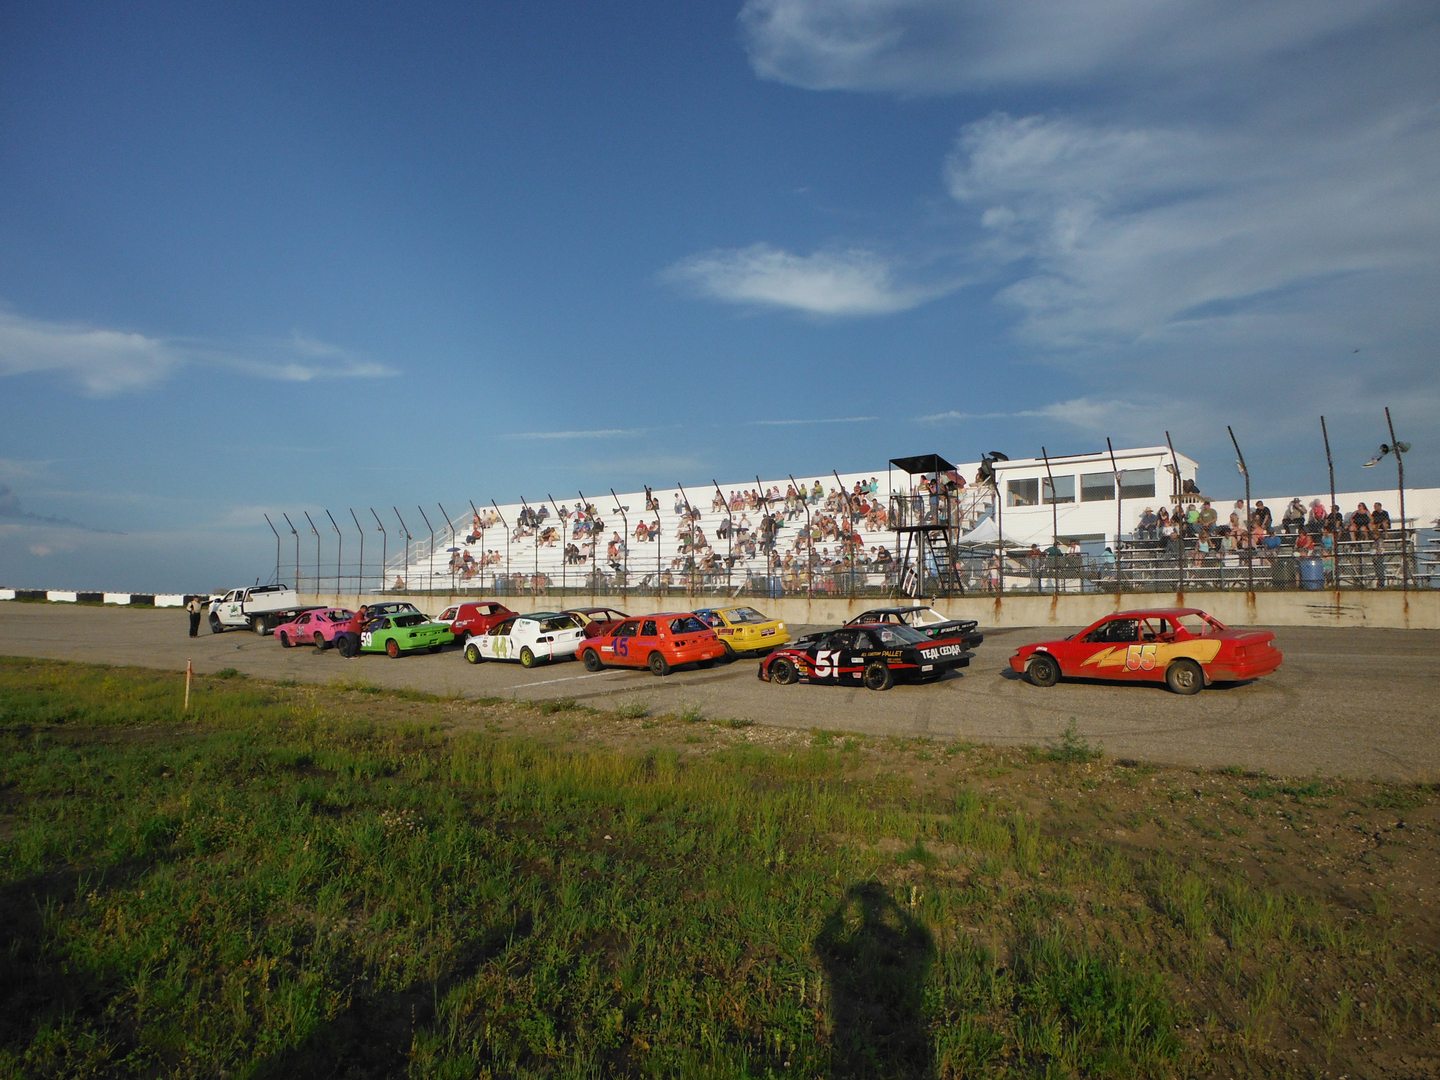 Racing season begins at Hythe Motor Speedway this weekend